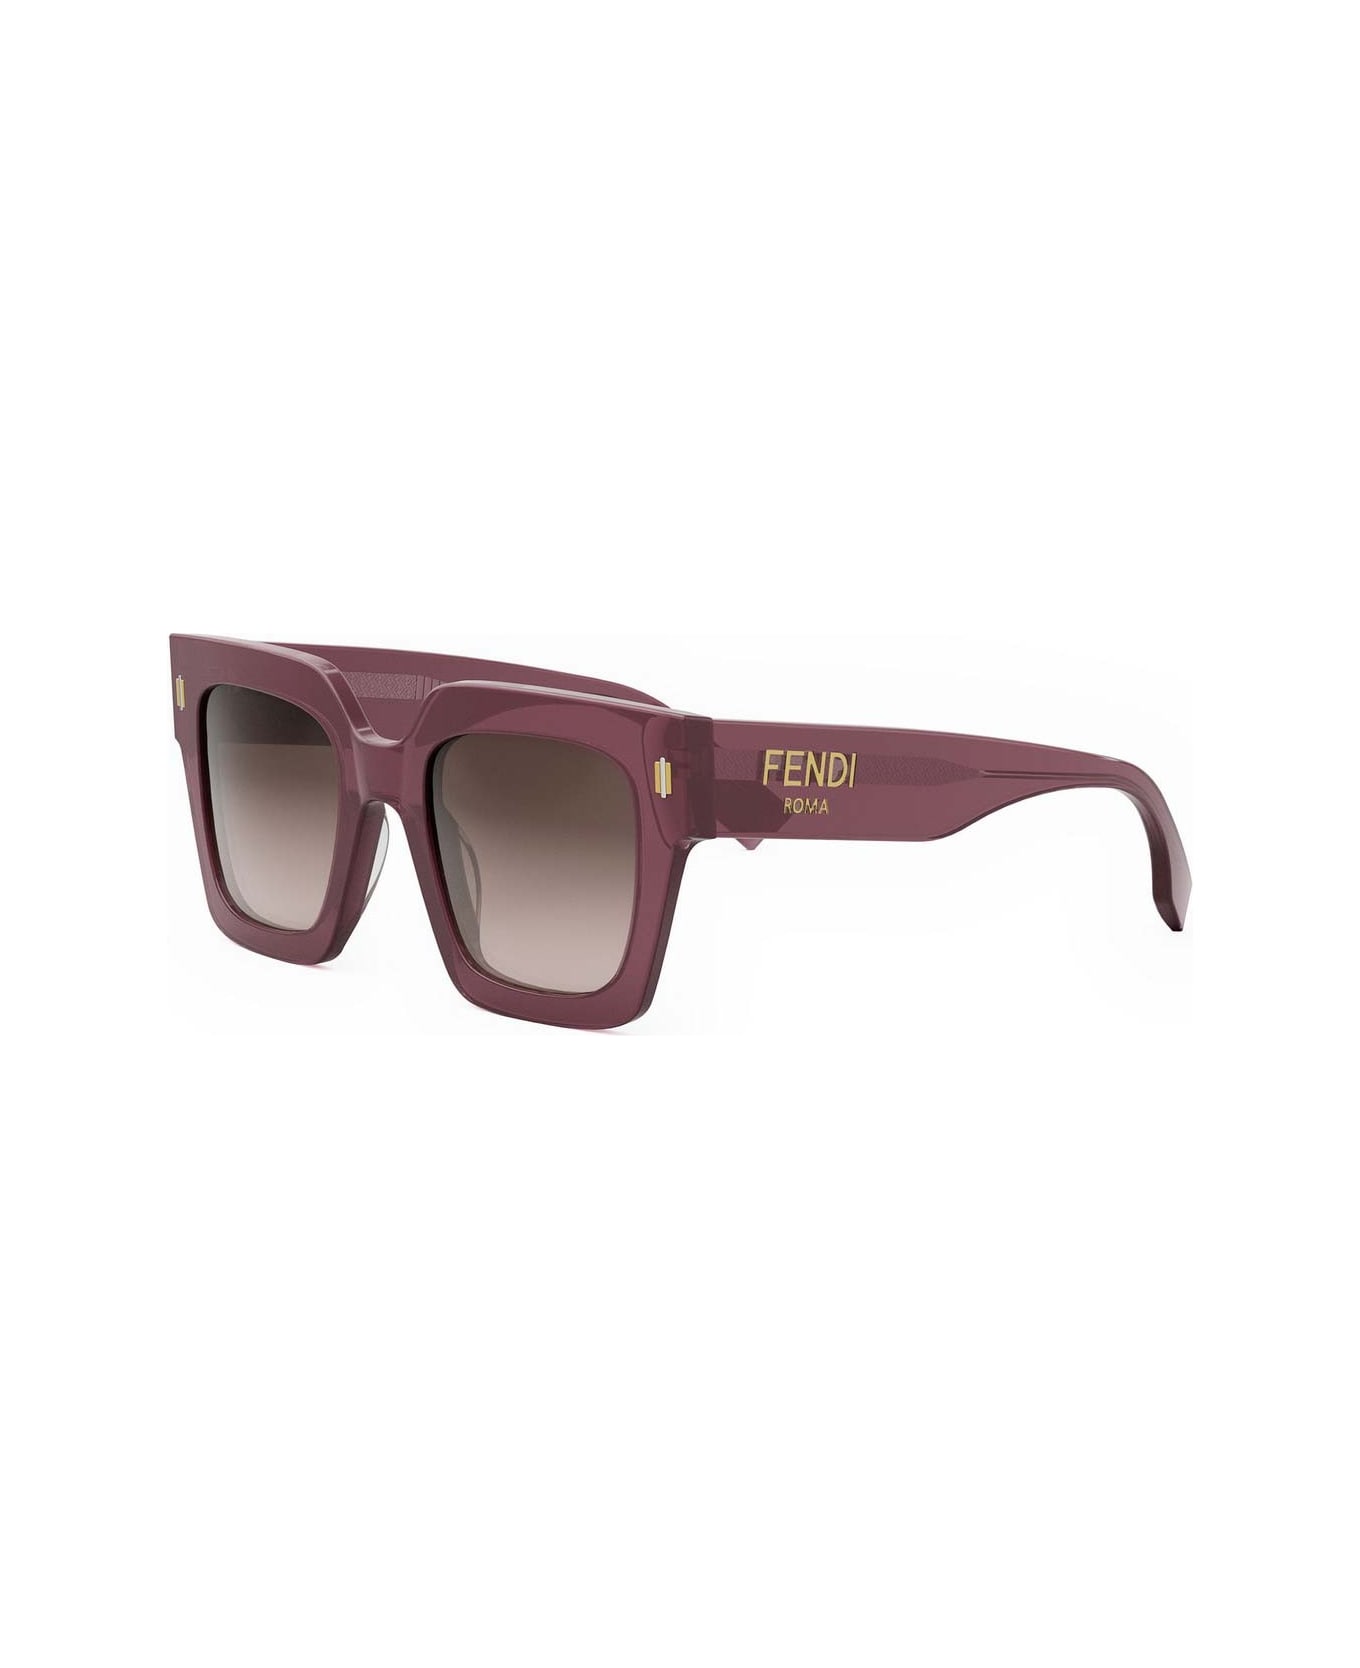 Fendi Eyewear Sunglasses - Viola/Marrone sfumato